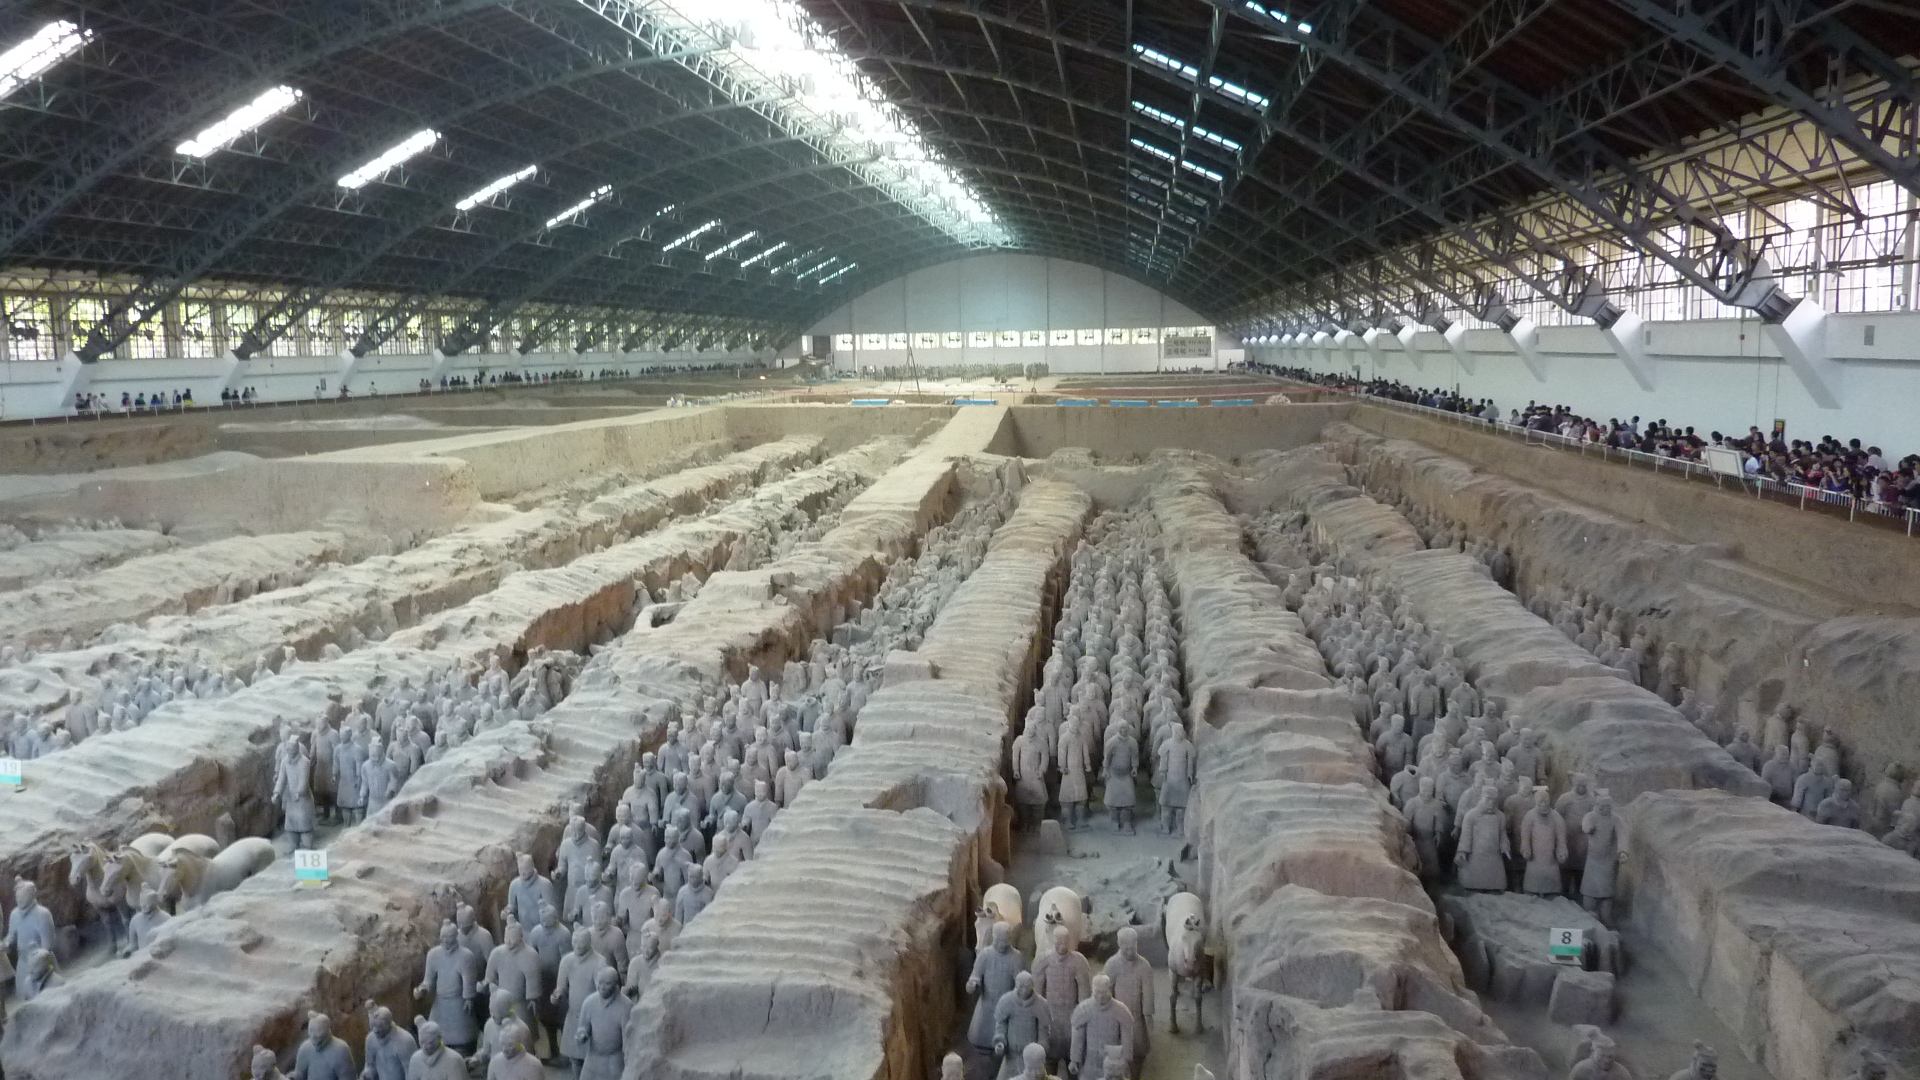 Terracotta Warriors at Qin Shi Huangdi's mausoleum, Xi'an. beam me